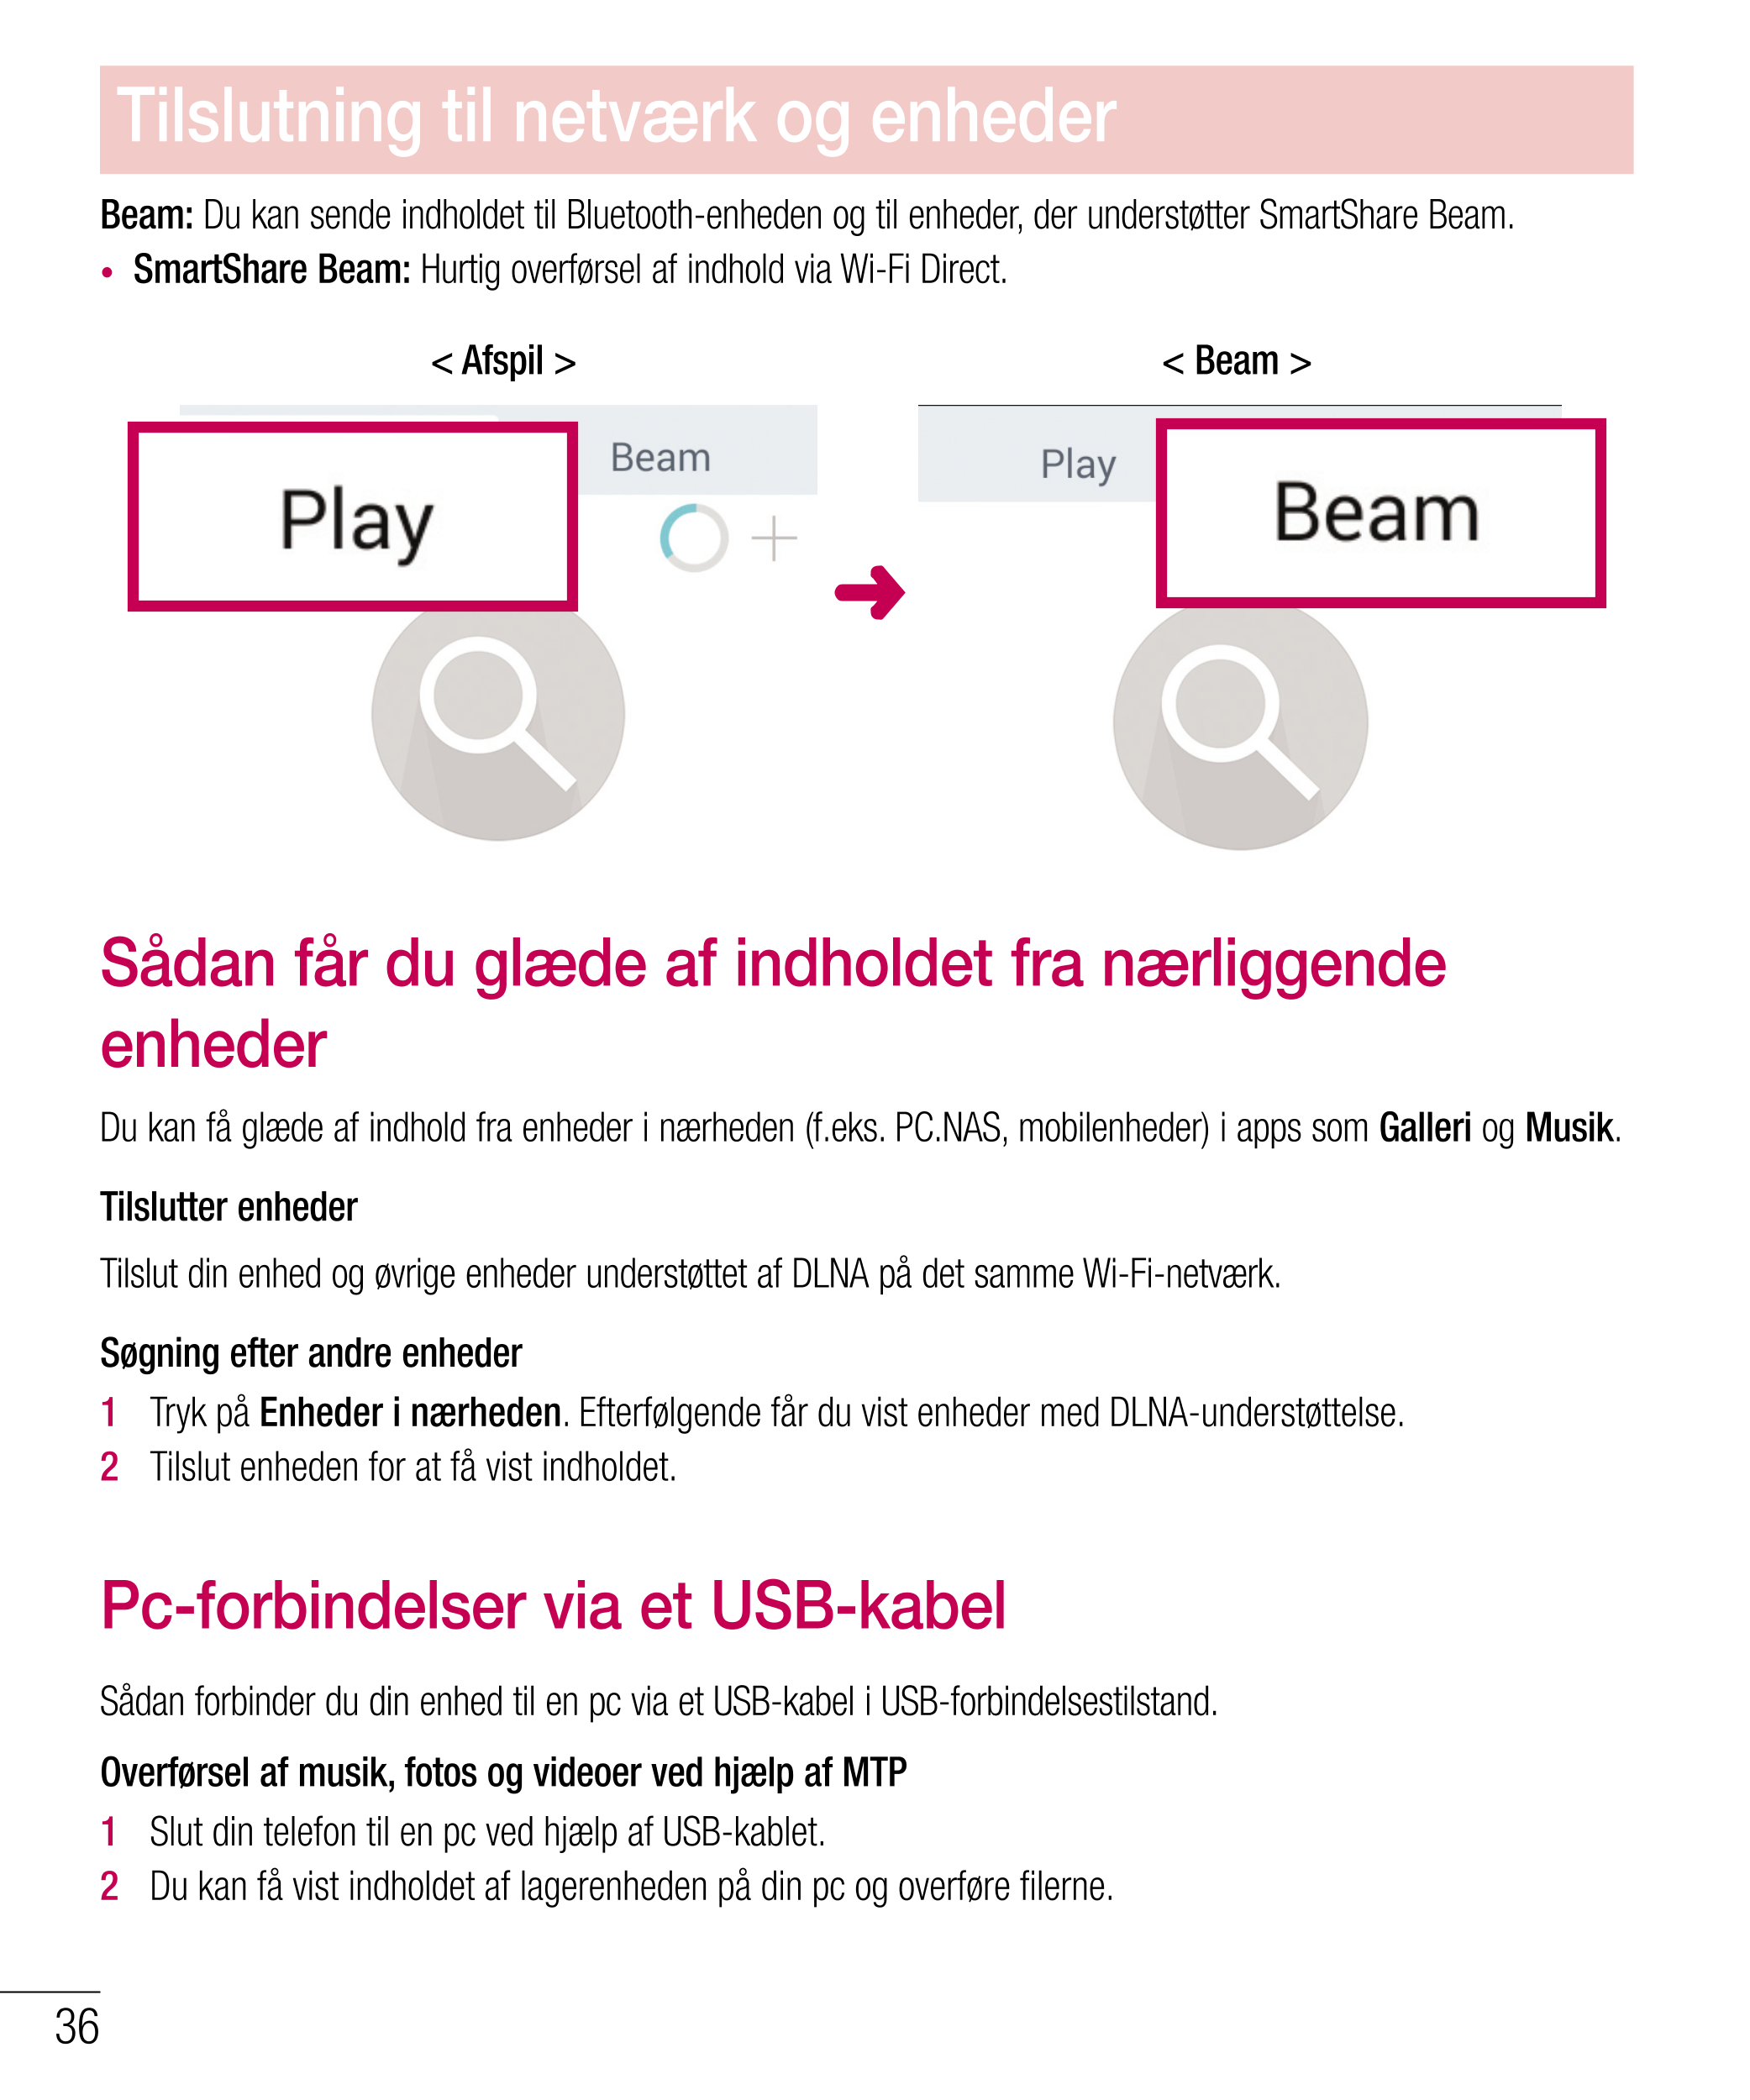 Tilslutning til netværk og enheder
Beam: Du kan sende indholdet til Bluetooth-enheden og til enheder, der understøtter SmartShar